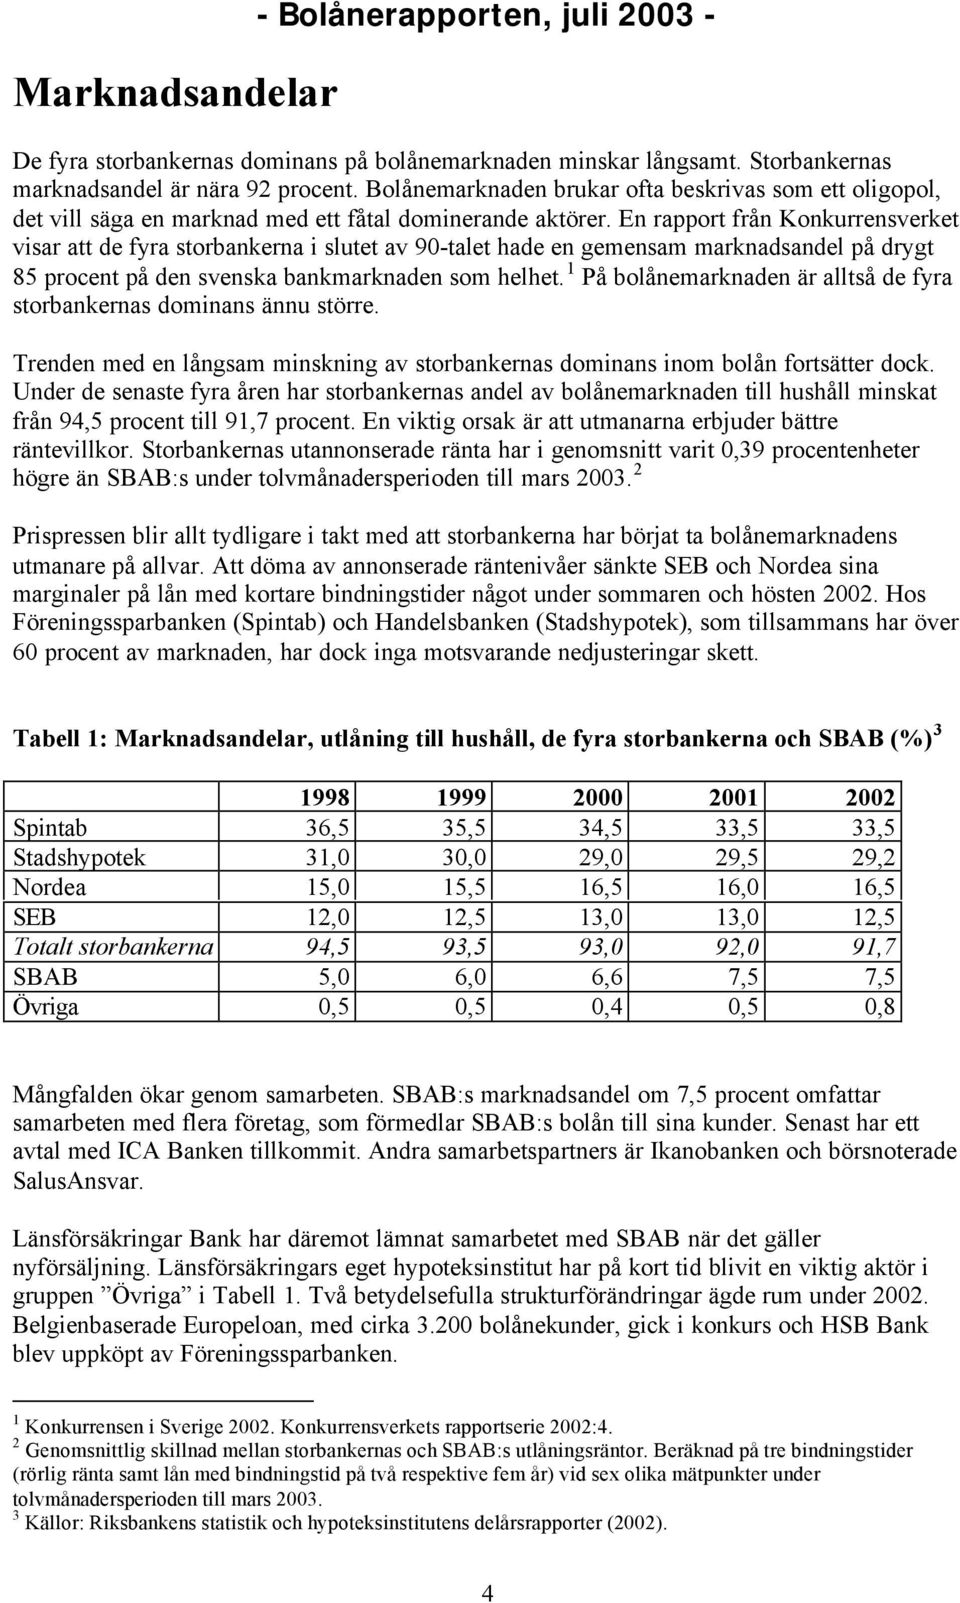 En rapport från Konkurrensverket visar att de fyra storbankerna i slutet av 90-talet hade en gemensam marknadsandel på drygt 85 procent på den svenska bankmarknaden som helhet.